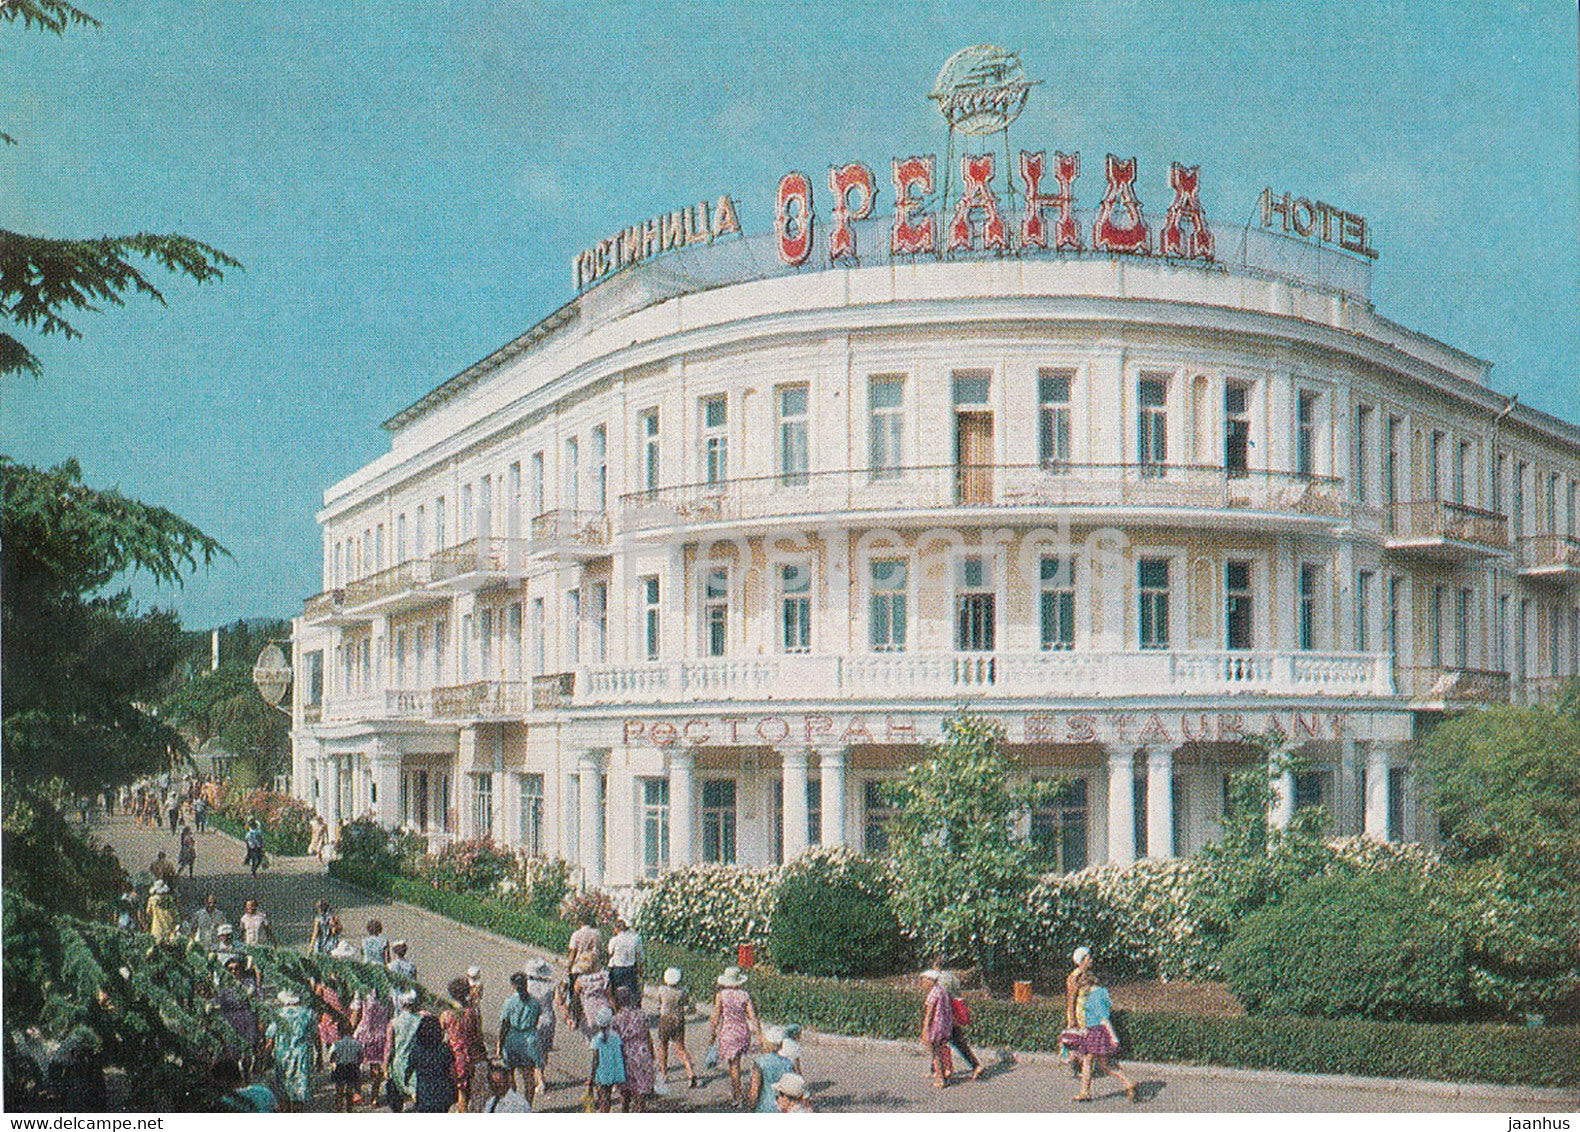 Crimea - Yalta - hotel Oreanda - AVIA - postal stationery - 1975 - Ukraine USSR - unused - JH Postcards